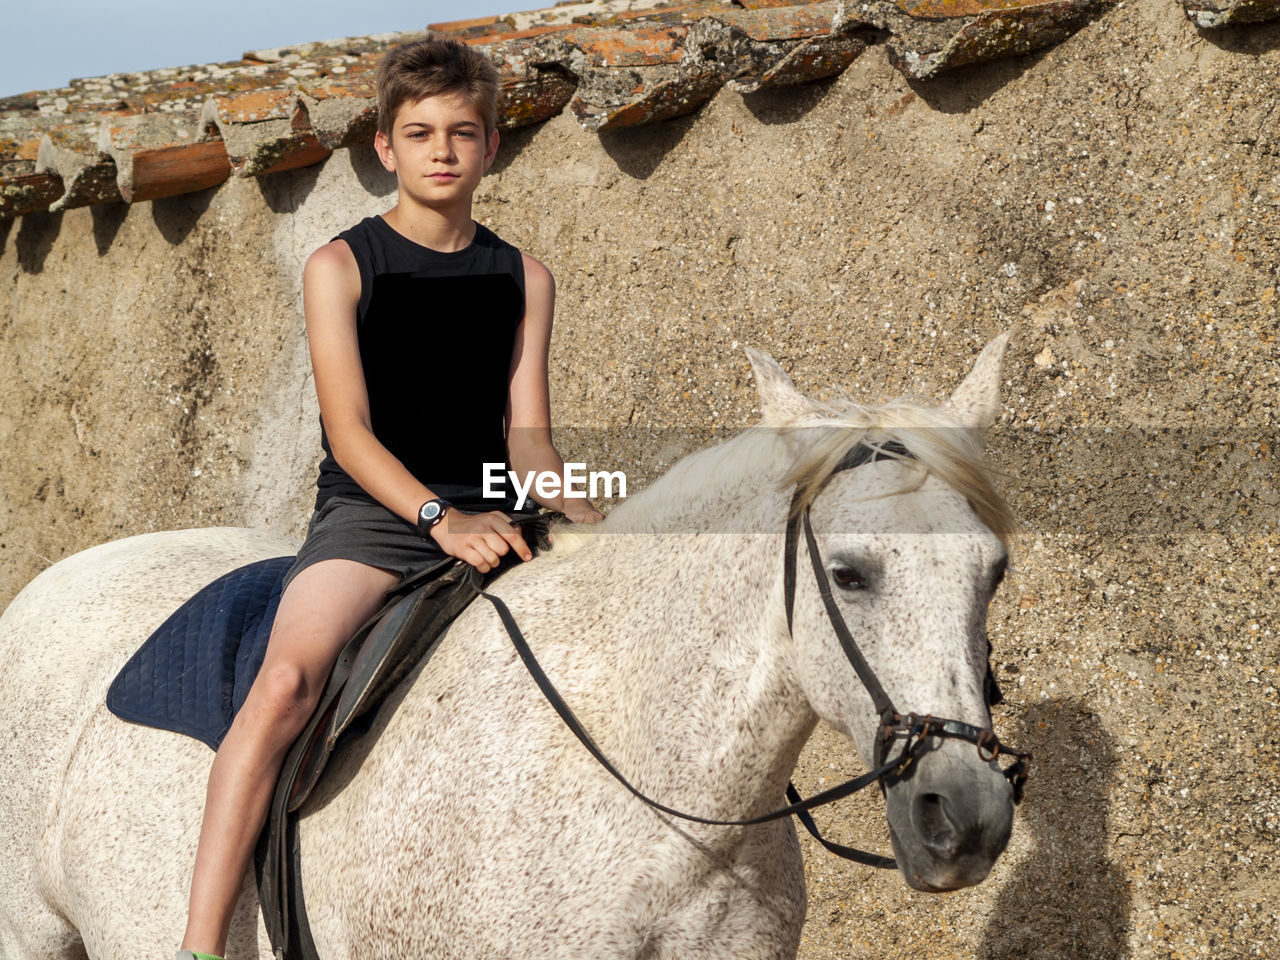 Portrait of boy riding horse